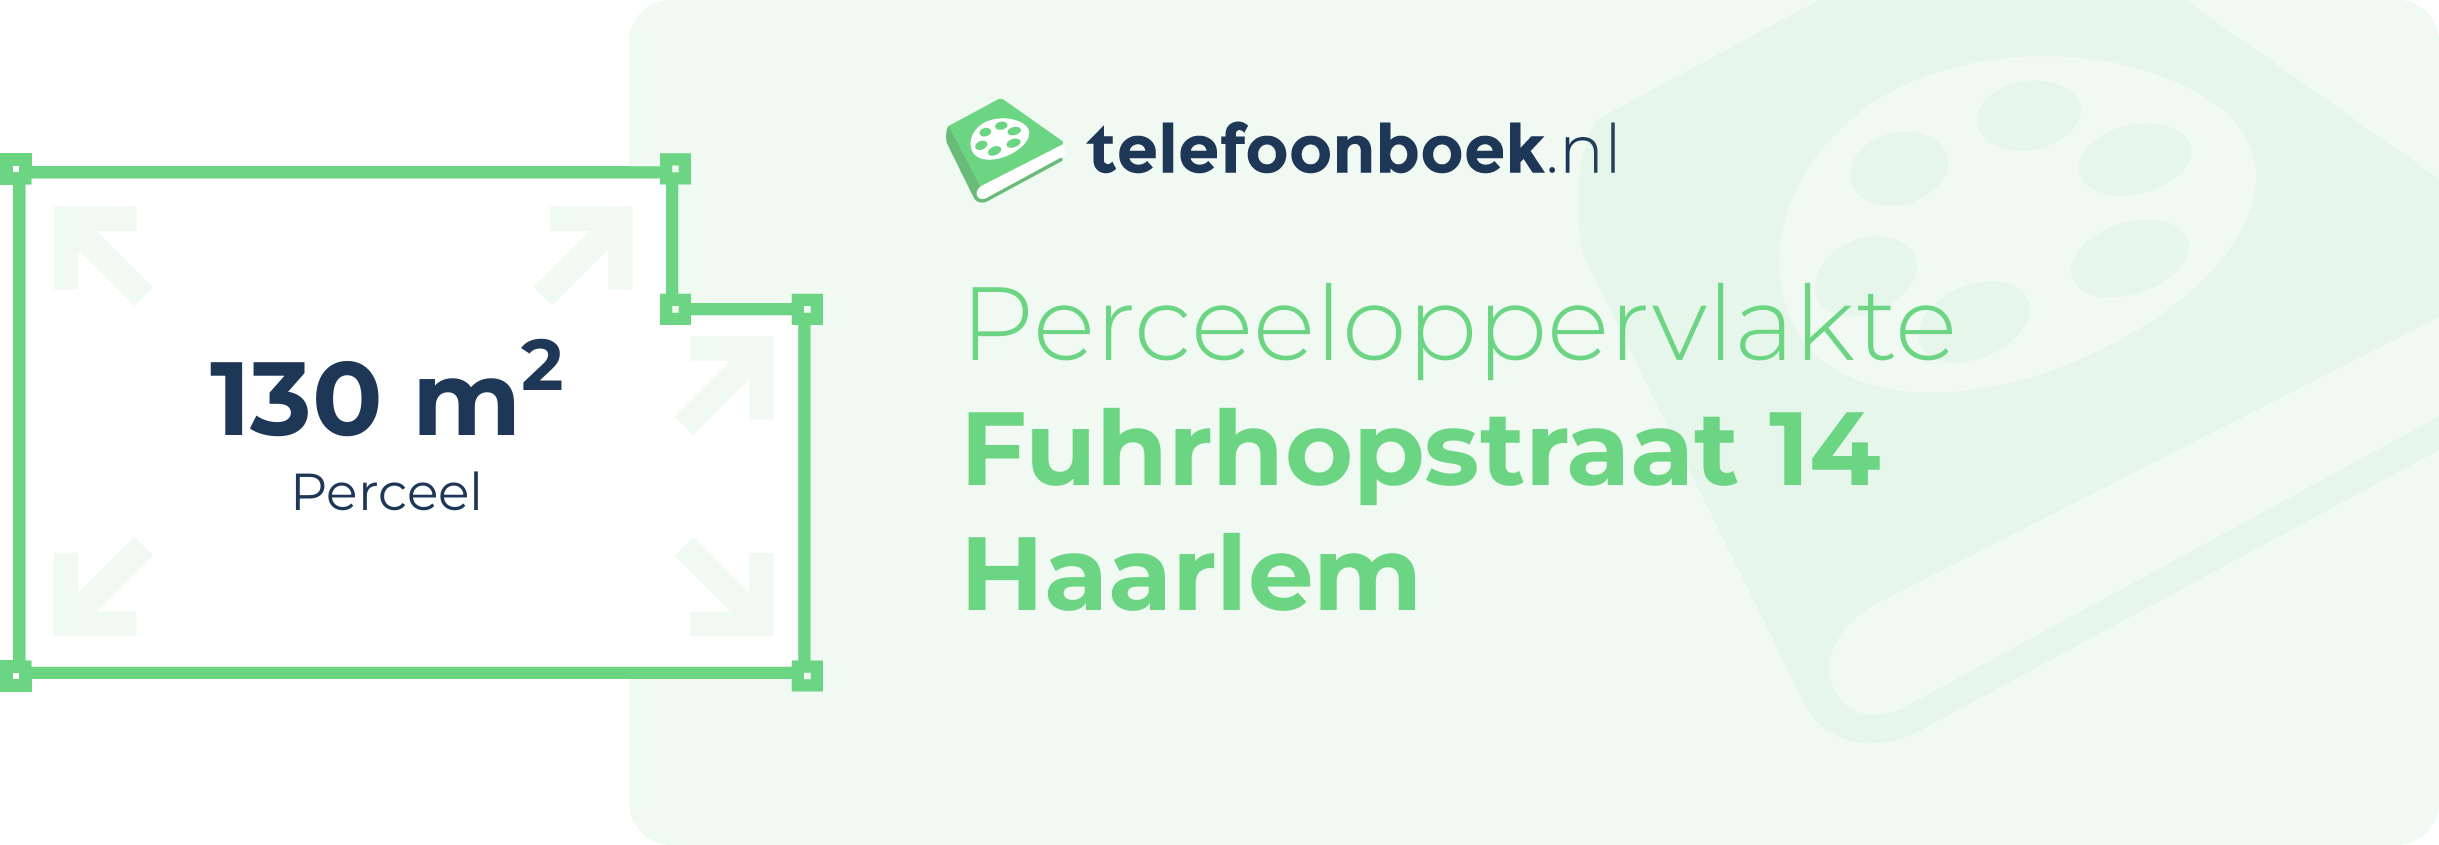 Perceeloppervlakte Fuhrhopstraat 14 Haarlem